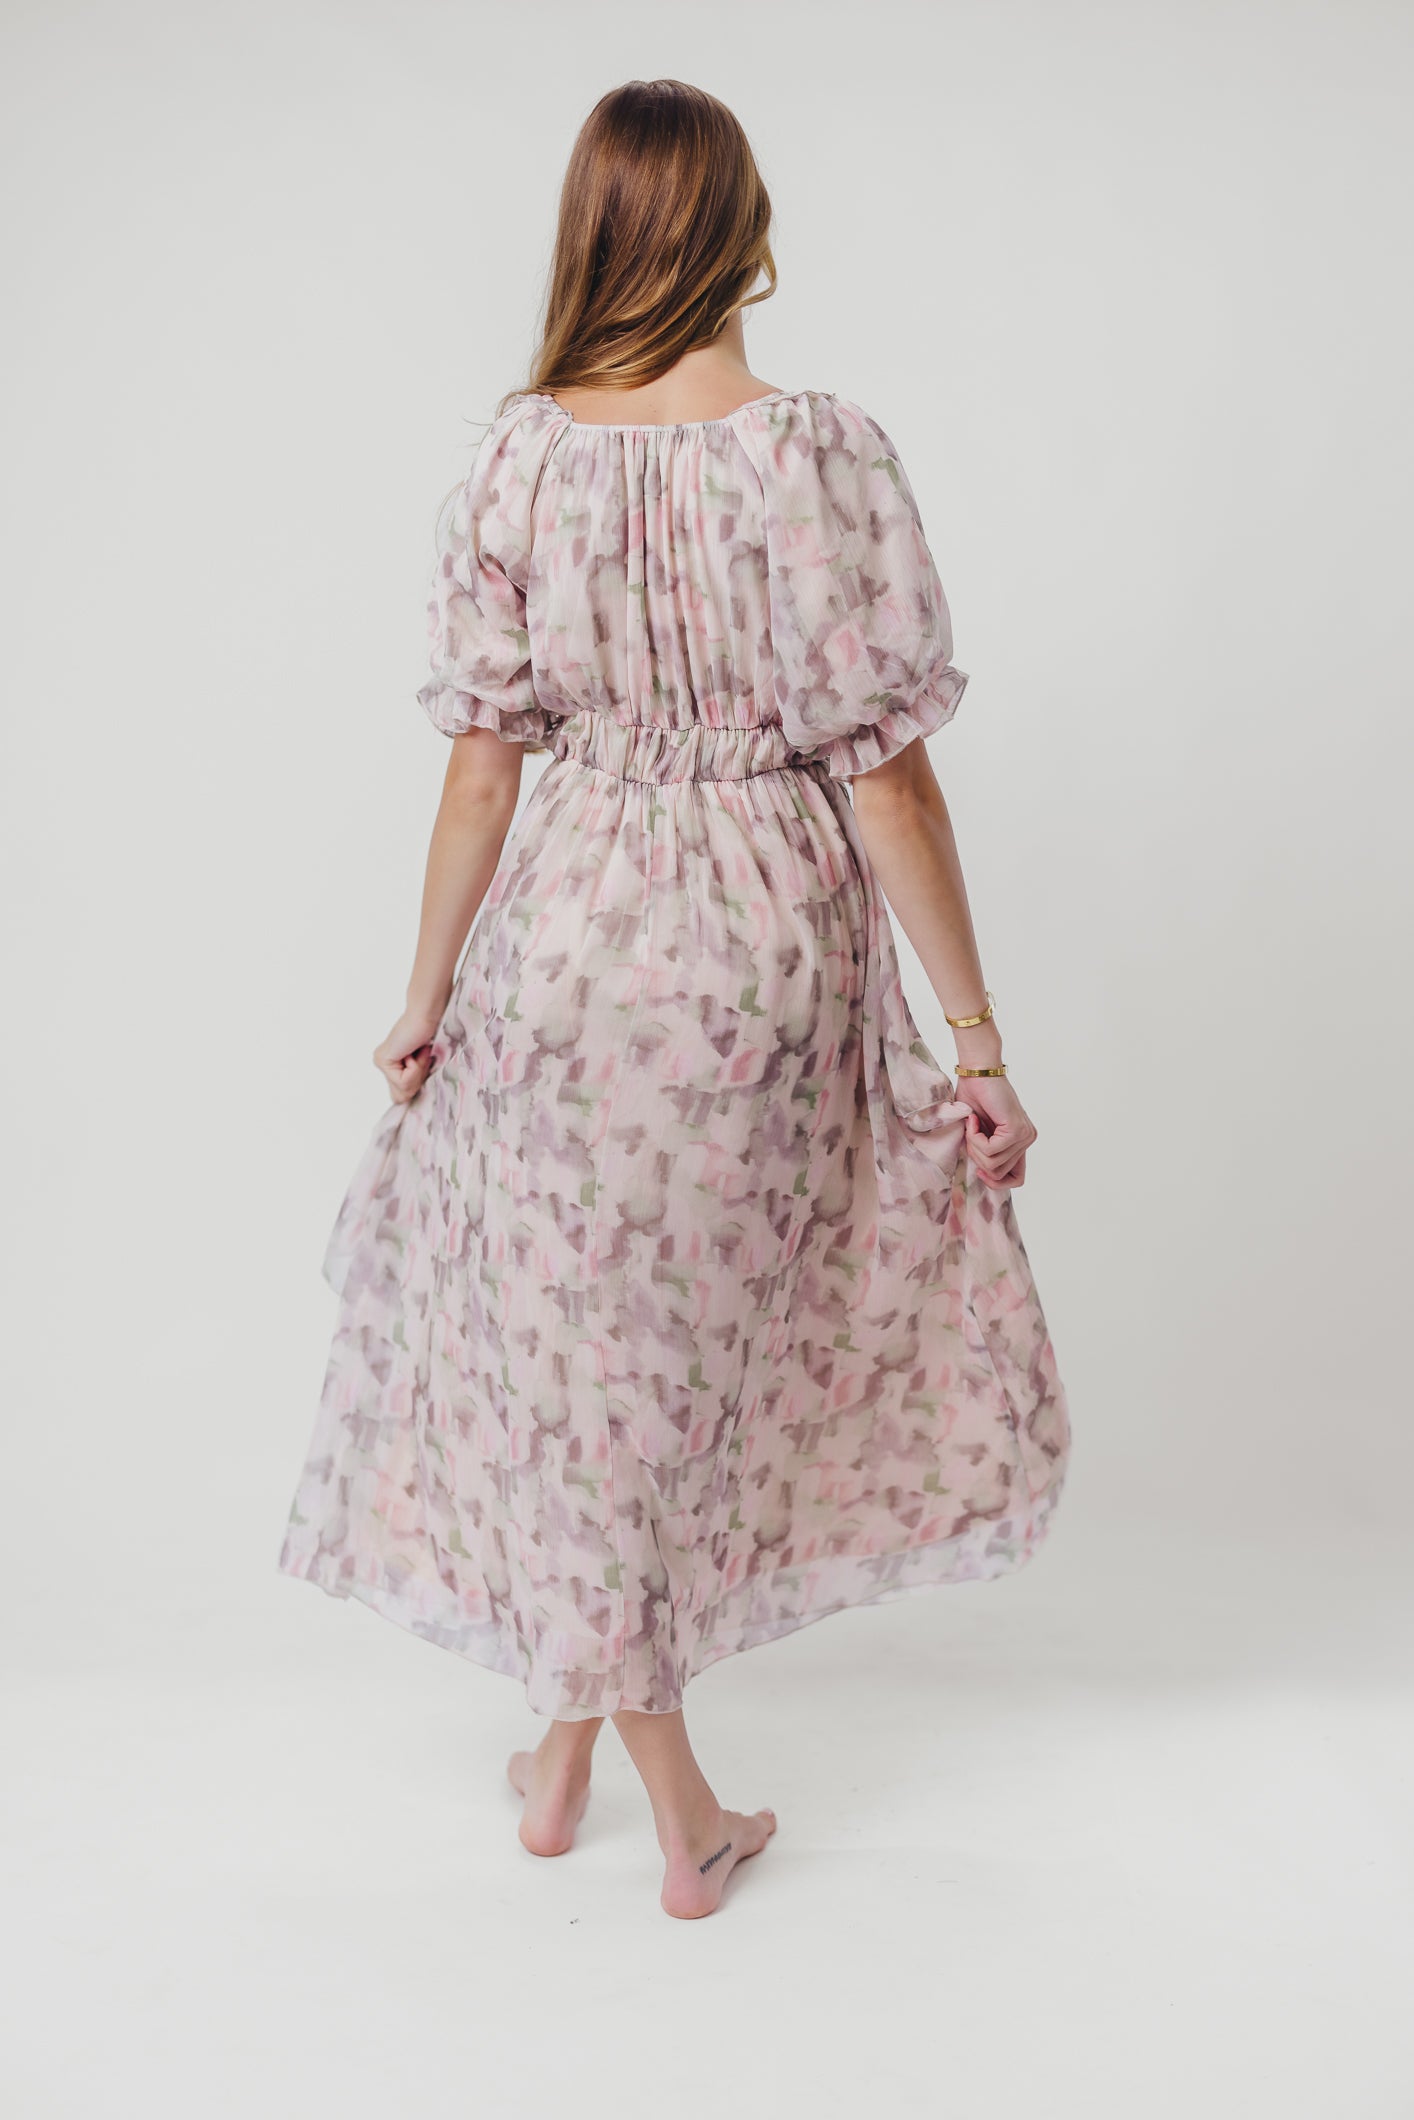 Mandy Tiered Midi Dress in Cream Multicolor - Inclusive Sizes (S-3X)